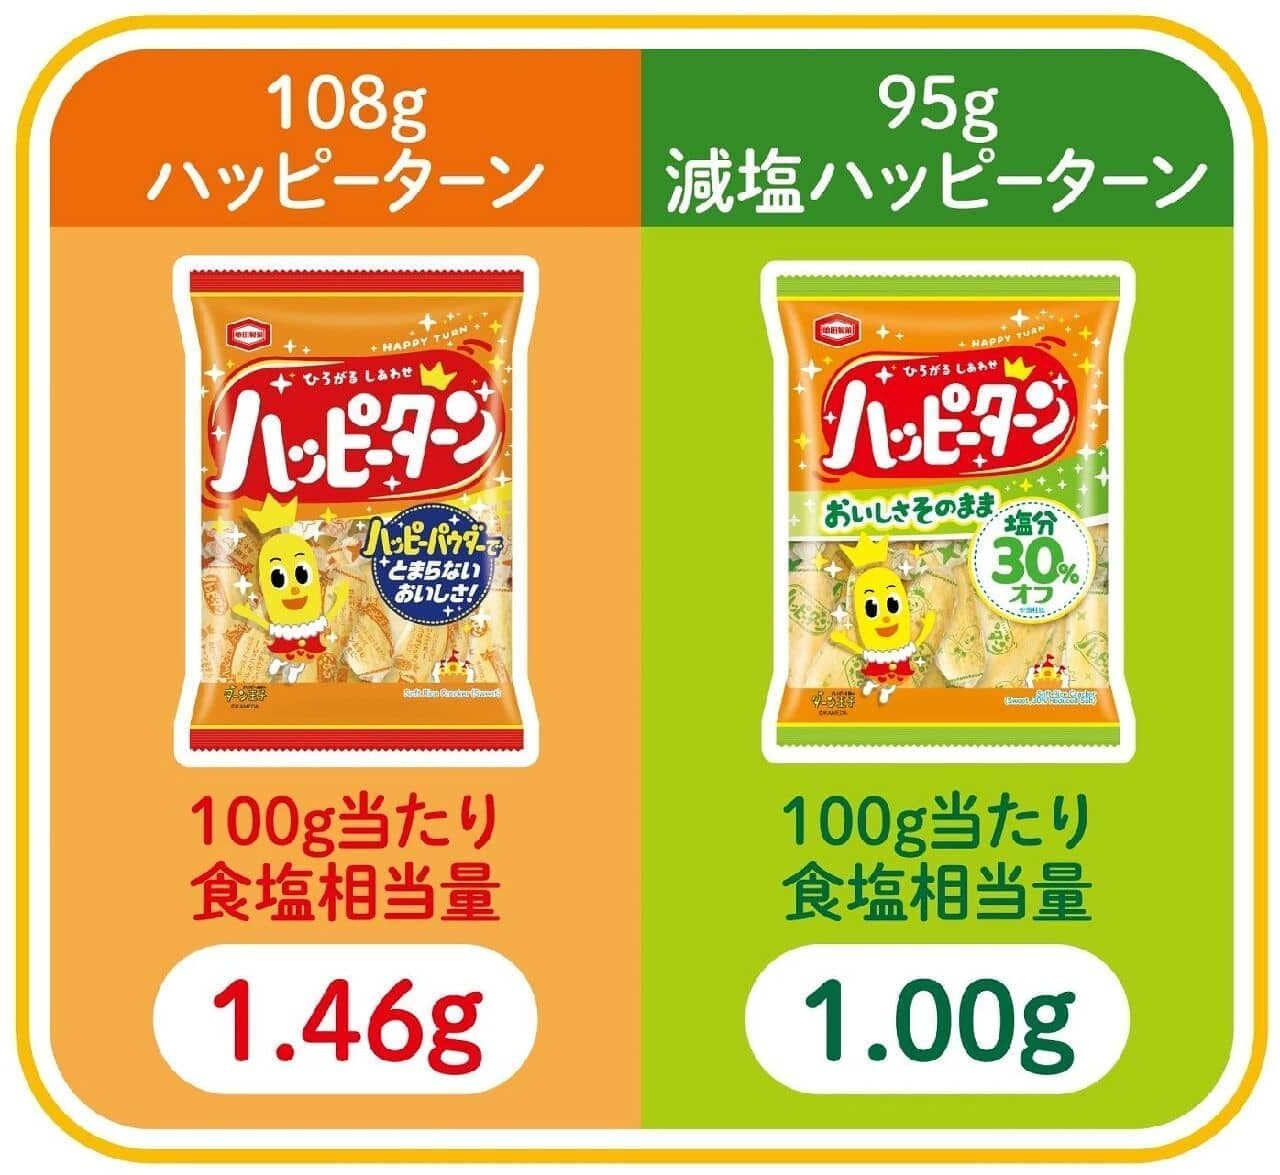 亀田製菓「95g 減塩 ハッピーターン」